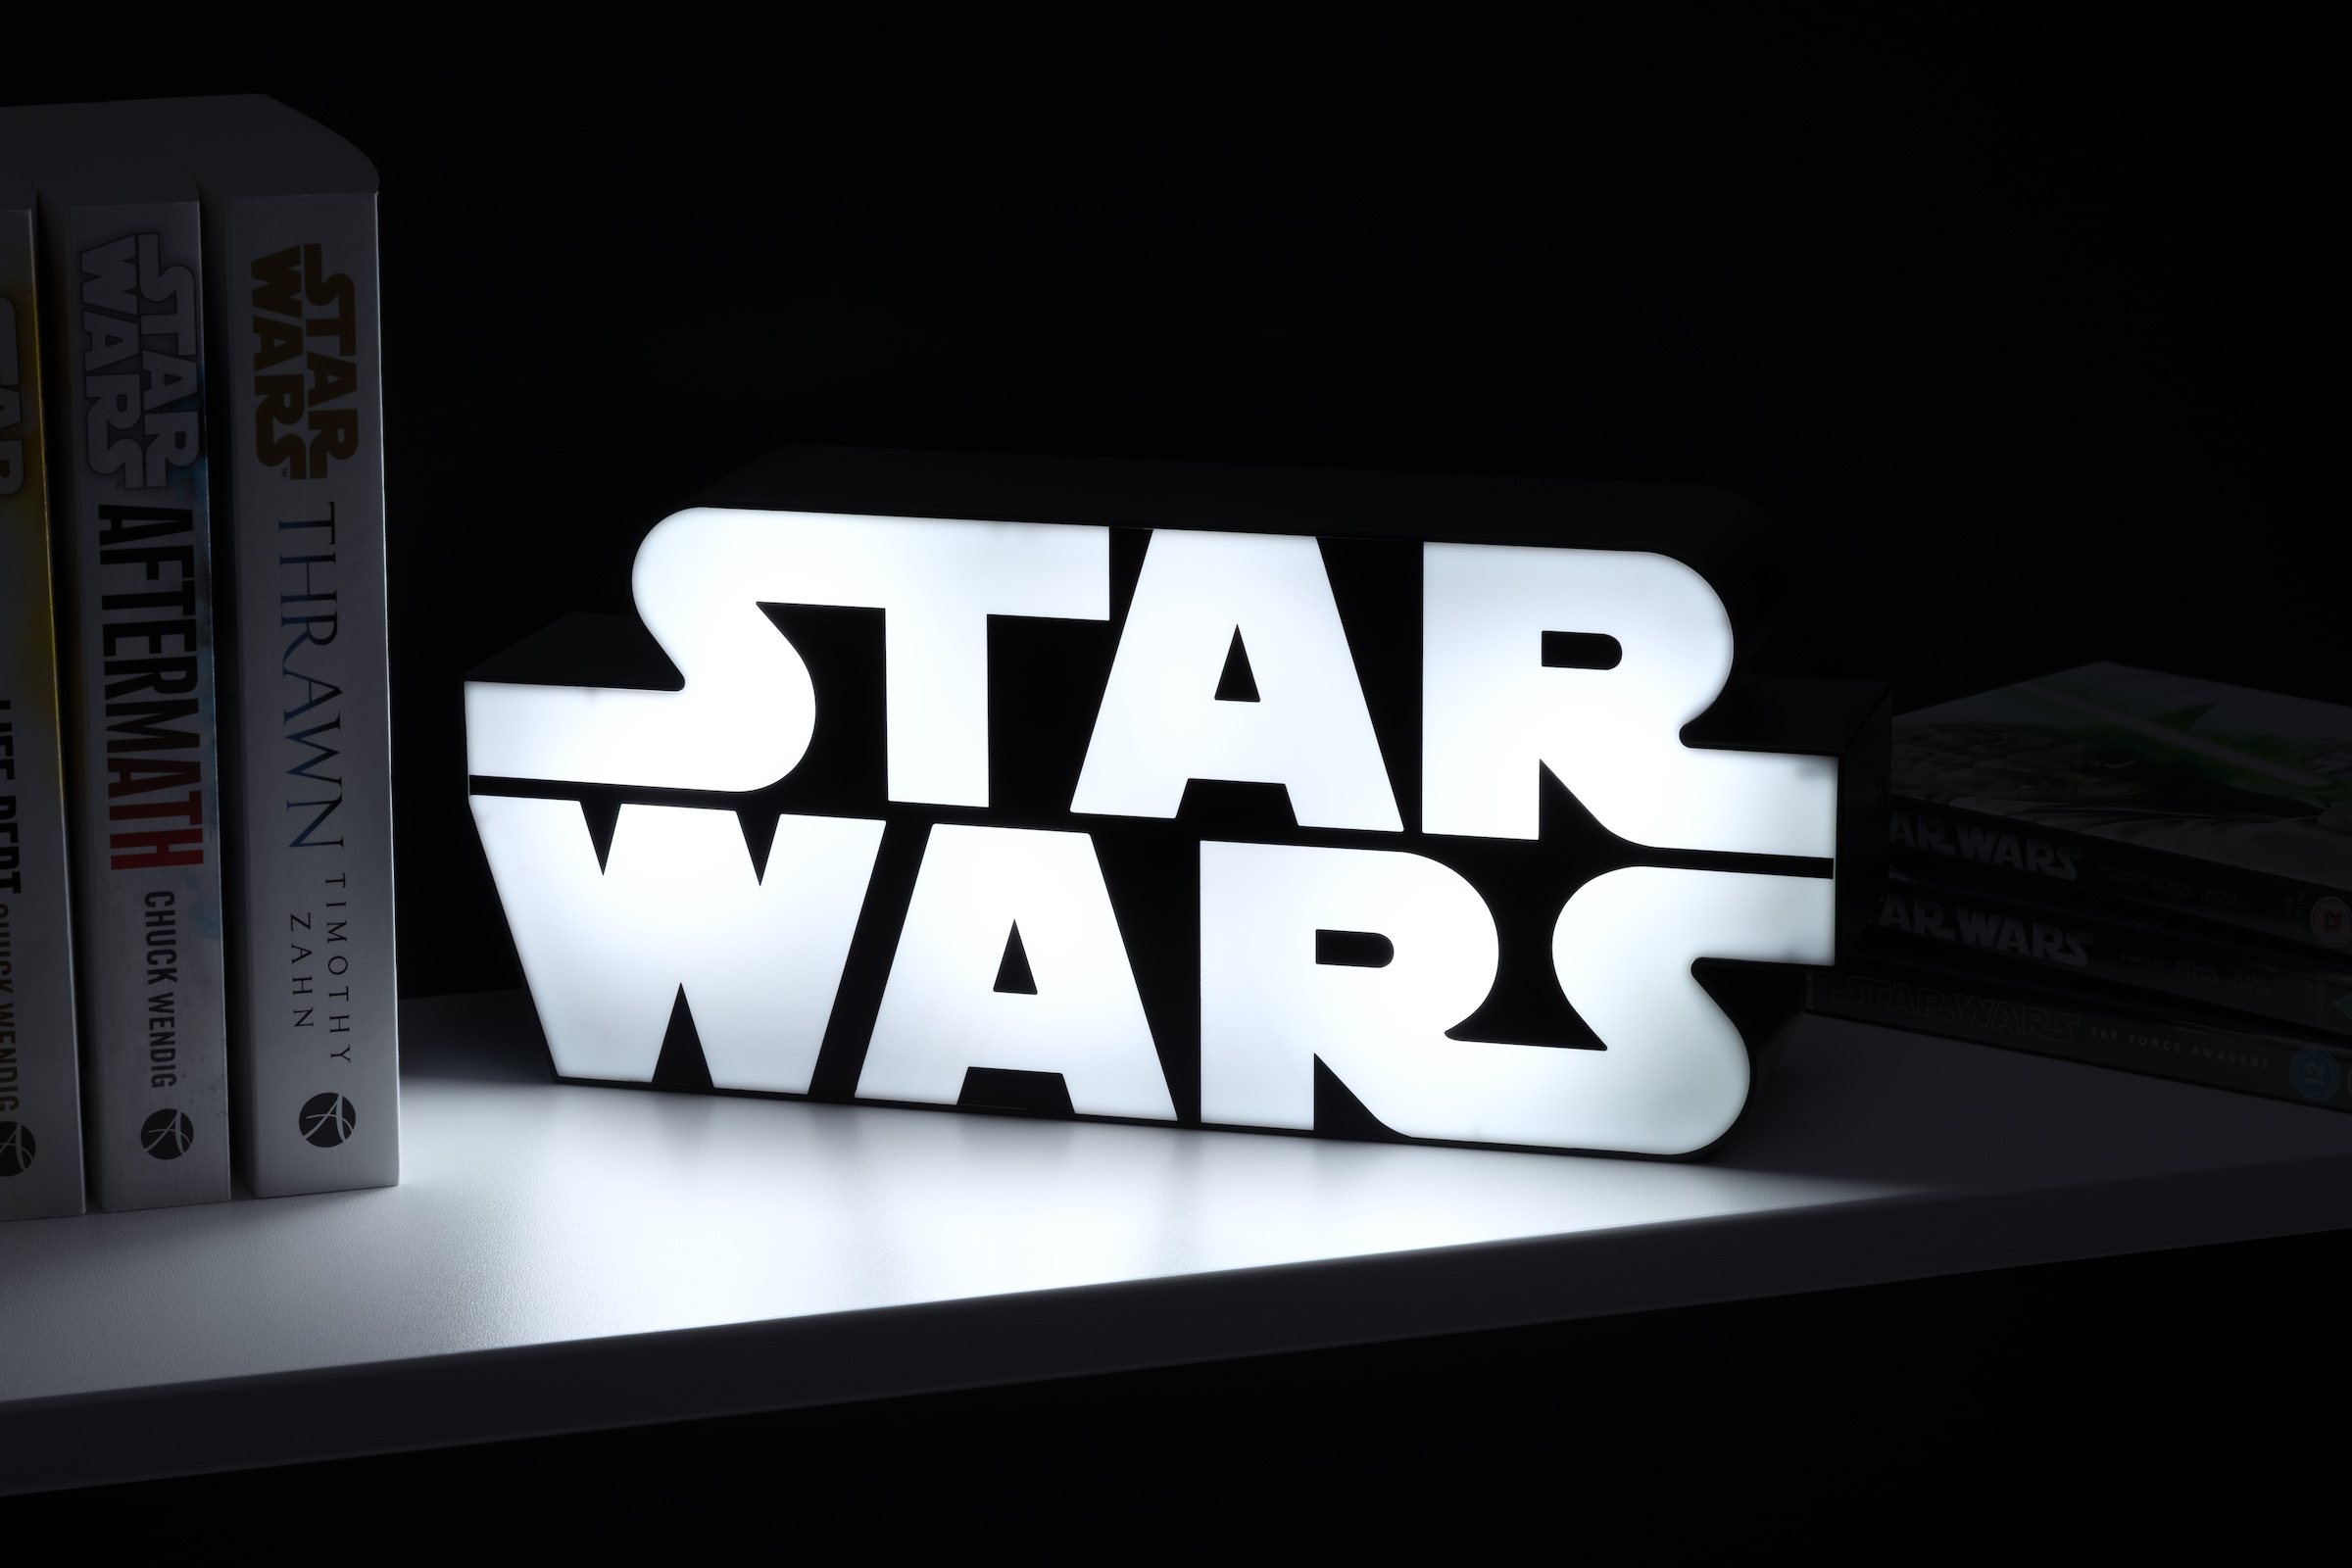 Paladone LED Dekolicht »Star Wars Logo Leuchte« auf Raten bestellen